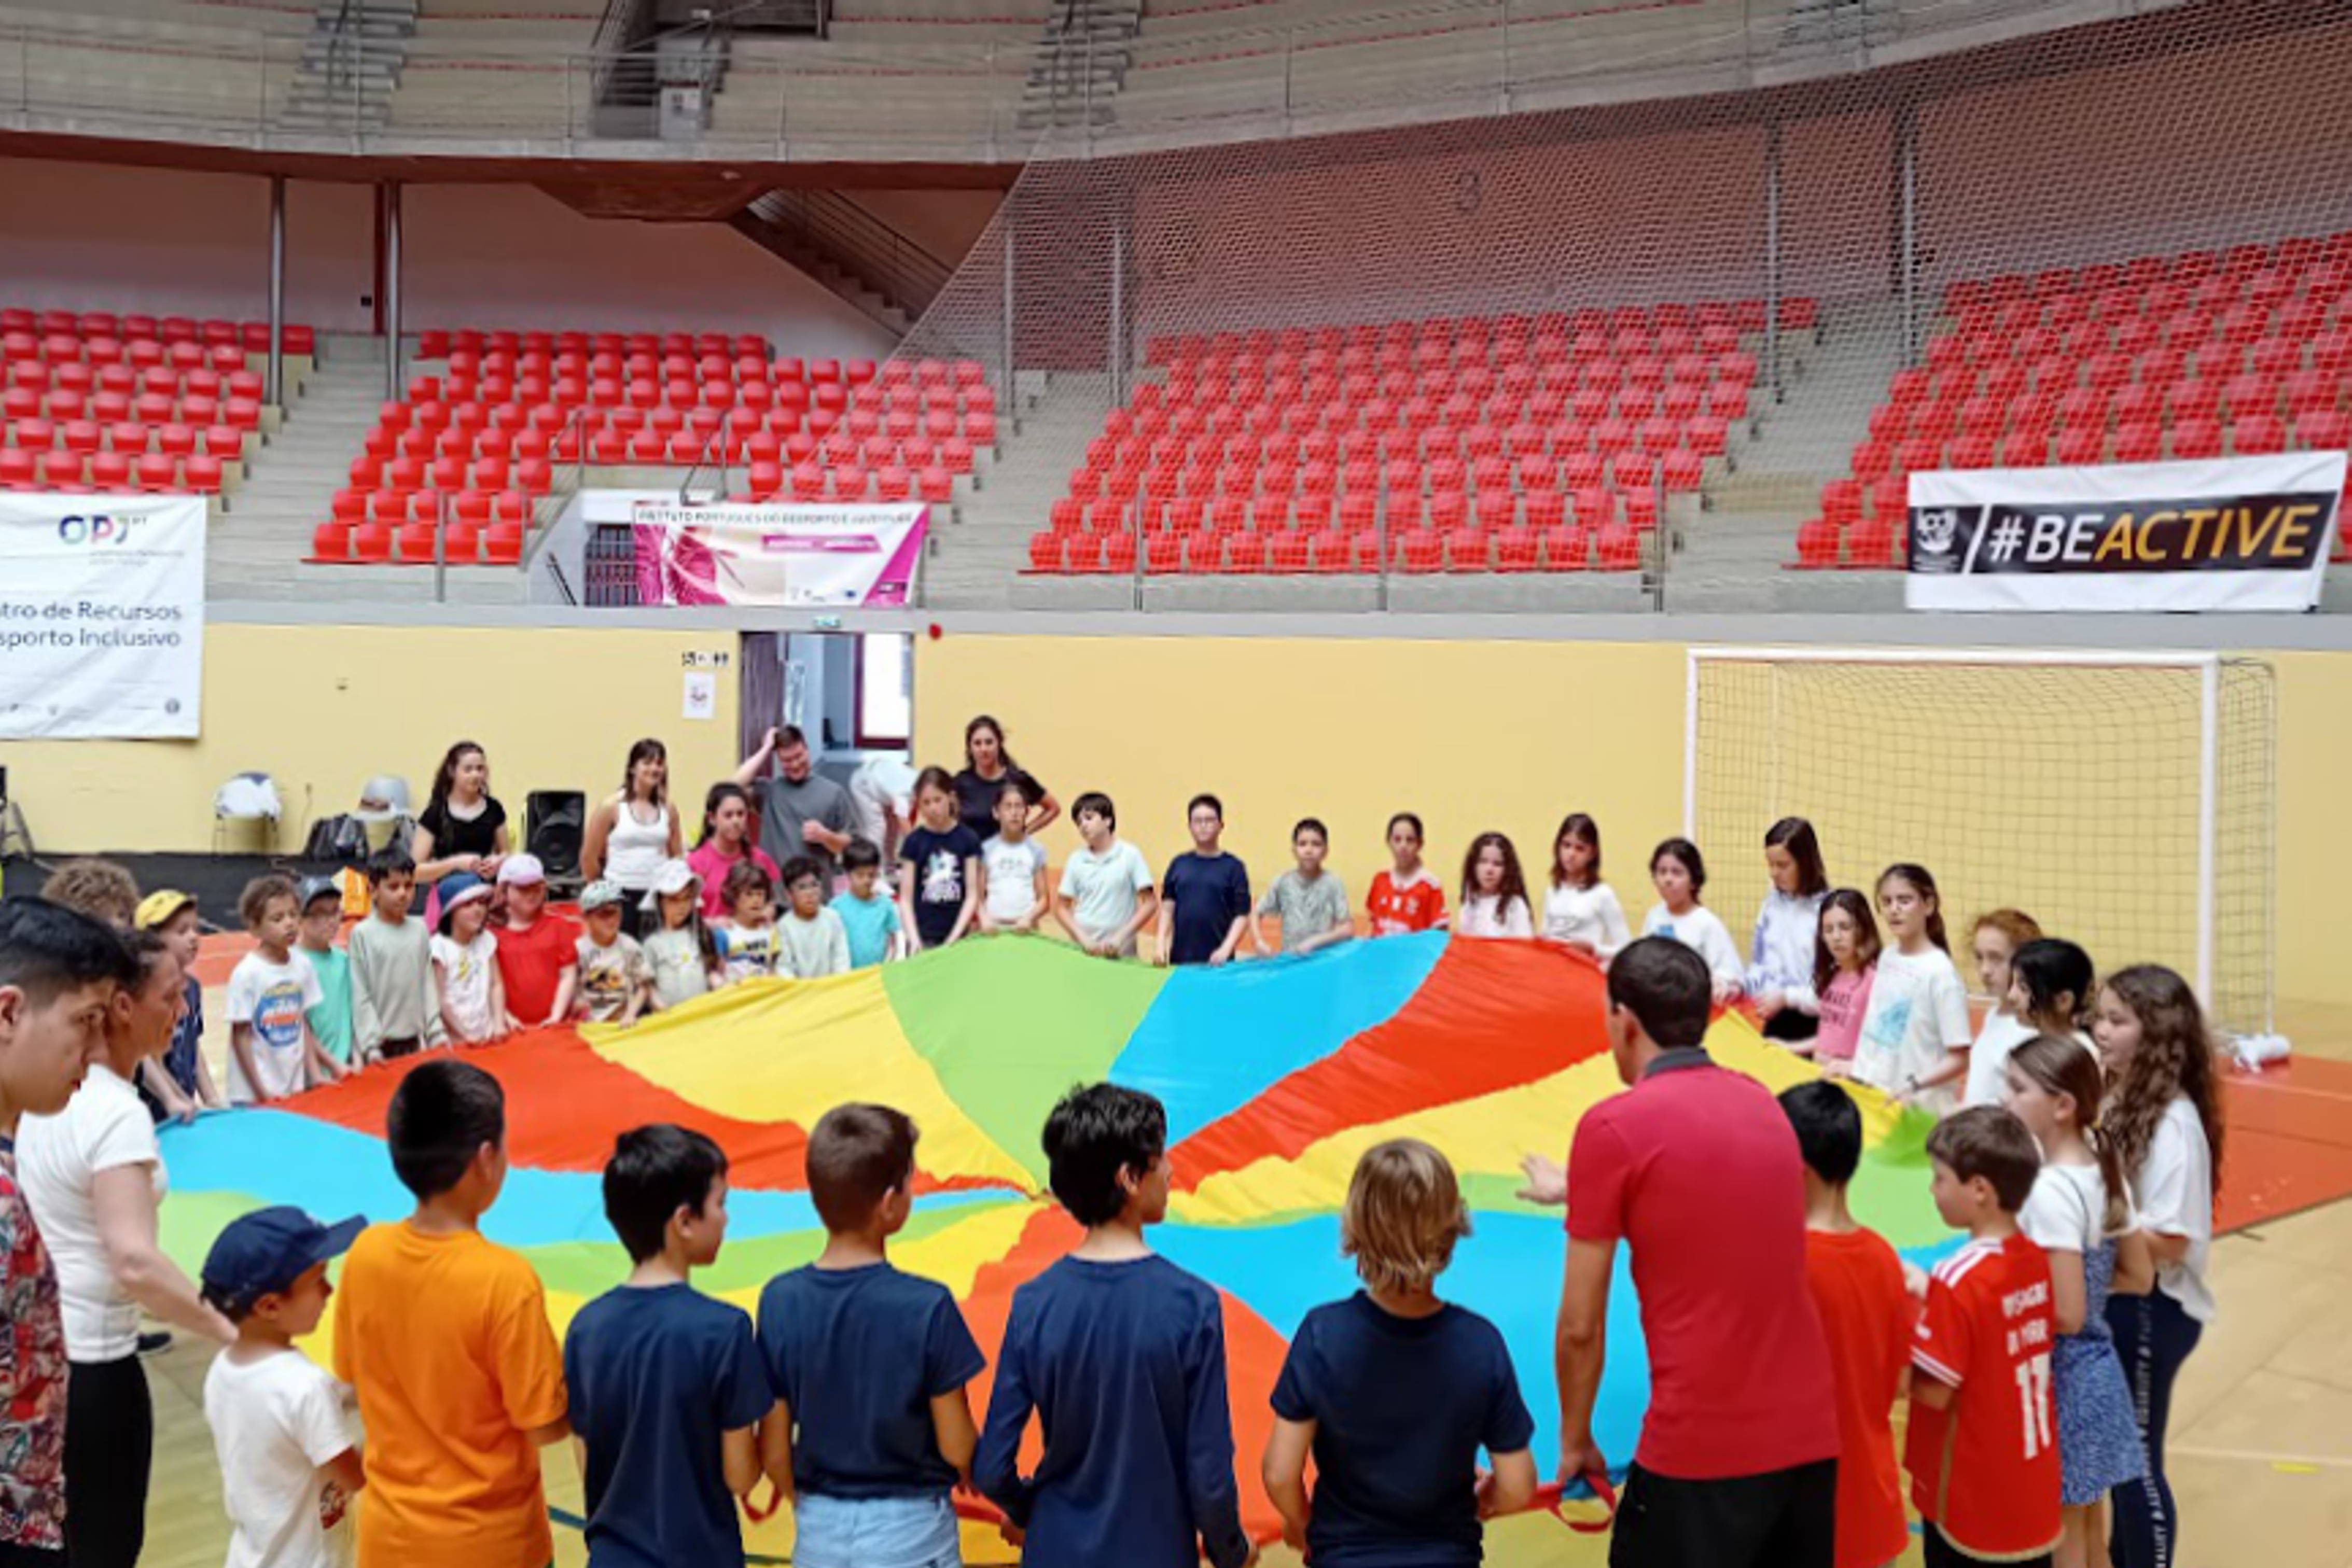 Grupo de alunos/as e professores/as, na Arena D'Évora, a participarem numa dinâmica de atividade física, com um páraquedas recreativo.